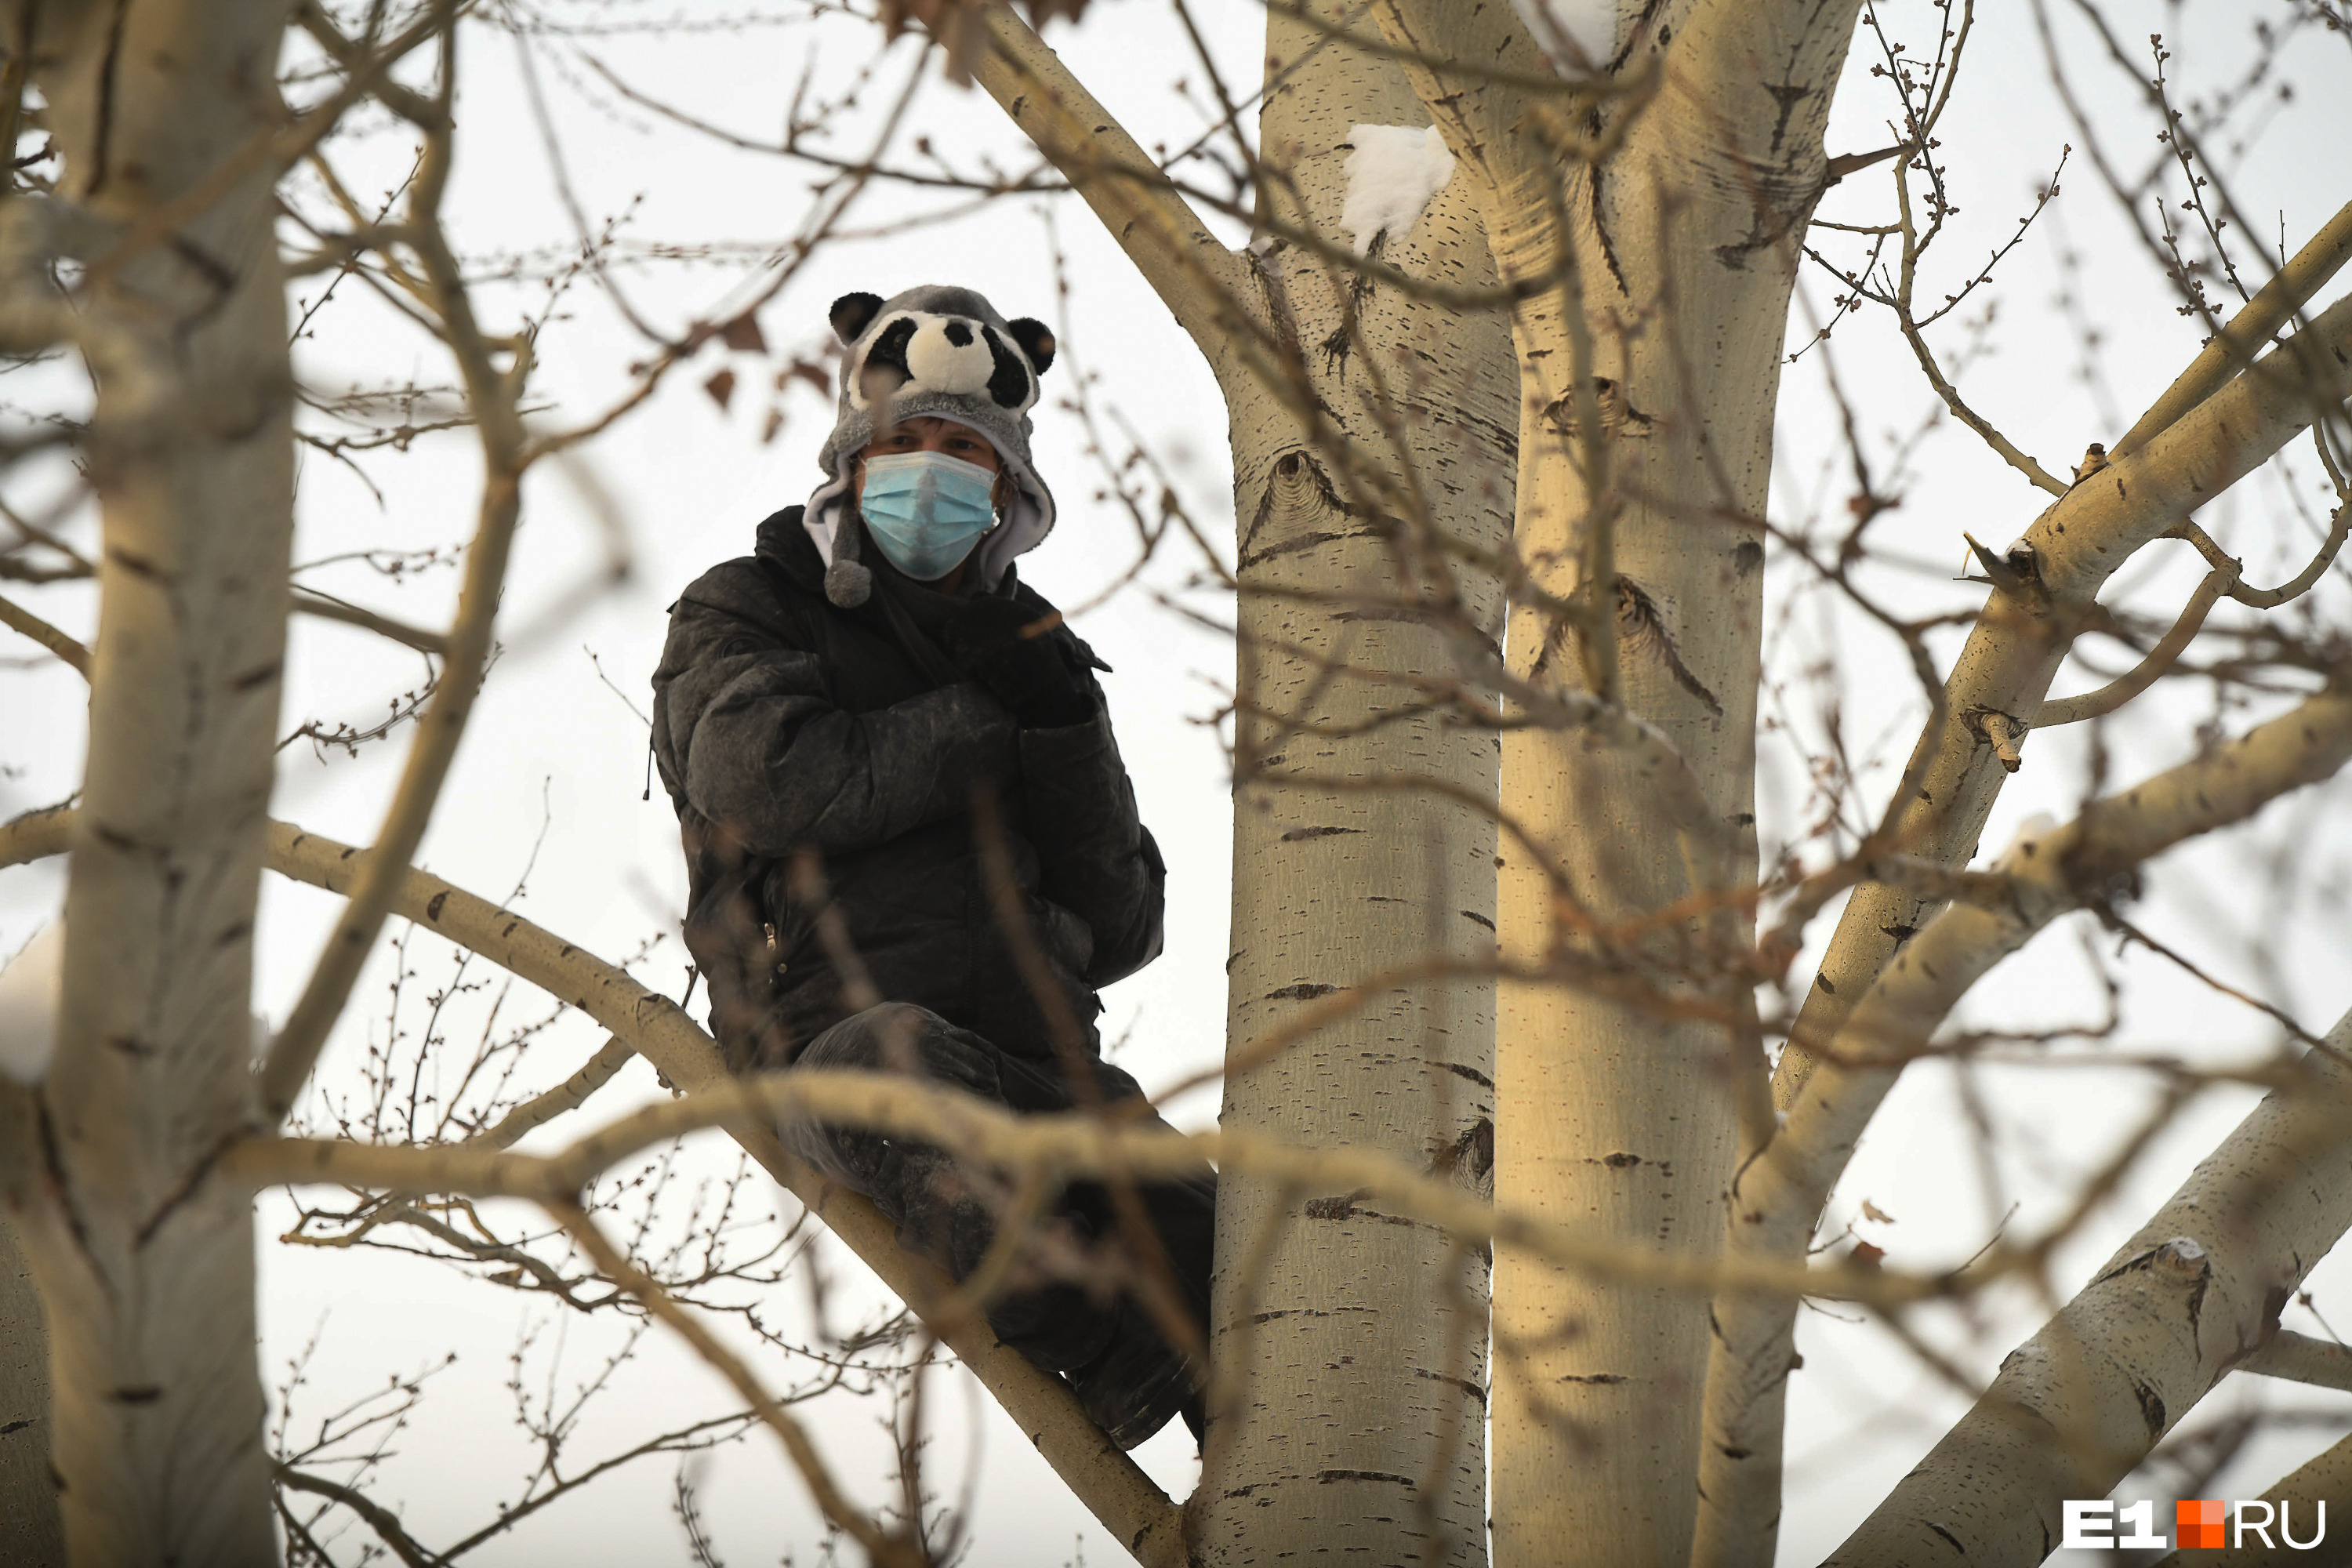 Человек в шапке с мордой панды нашел безопасное место